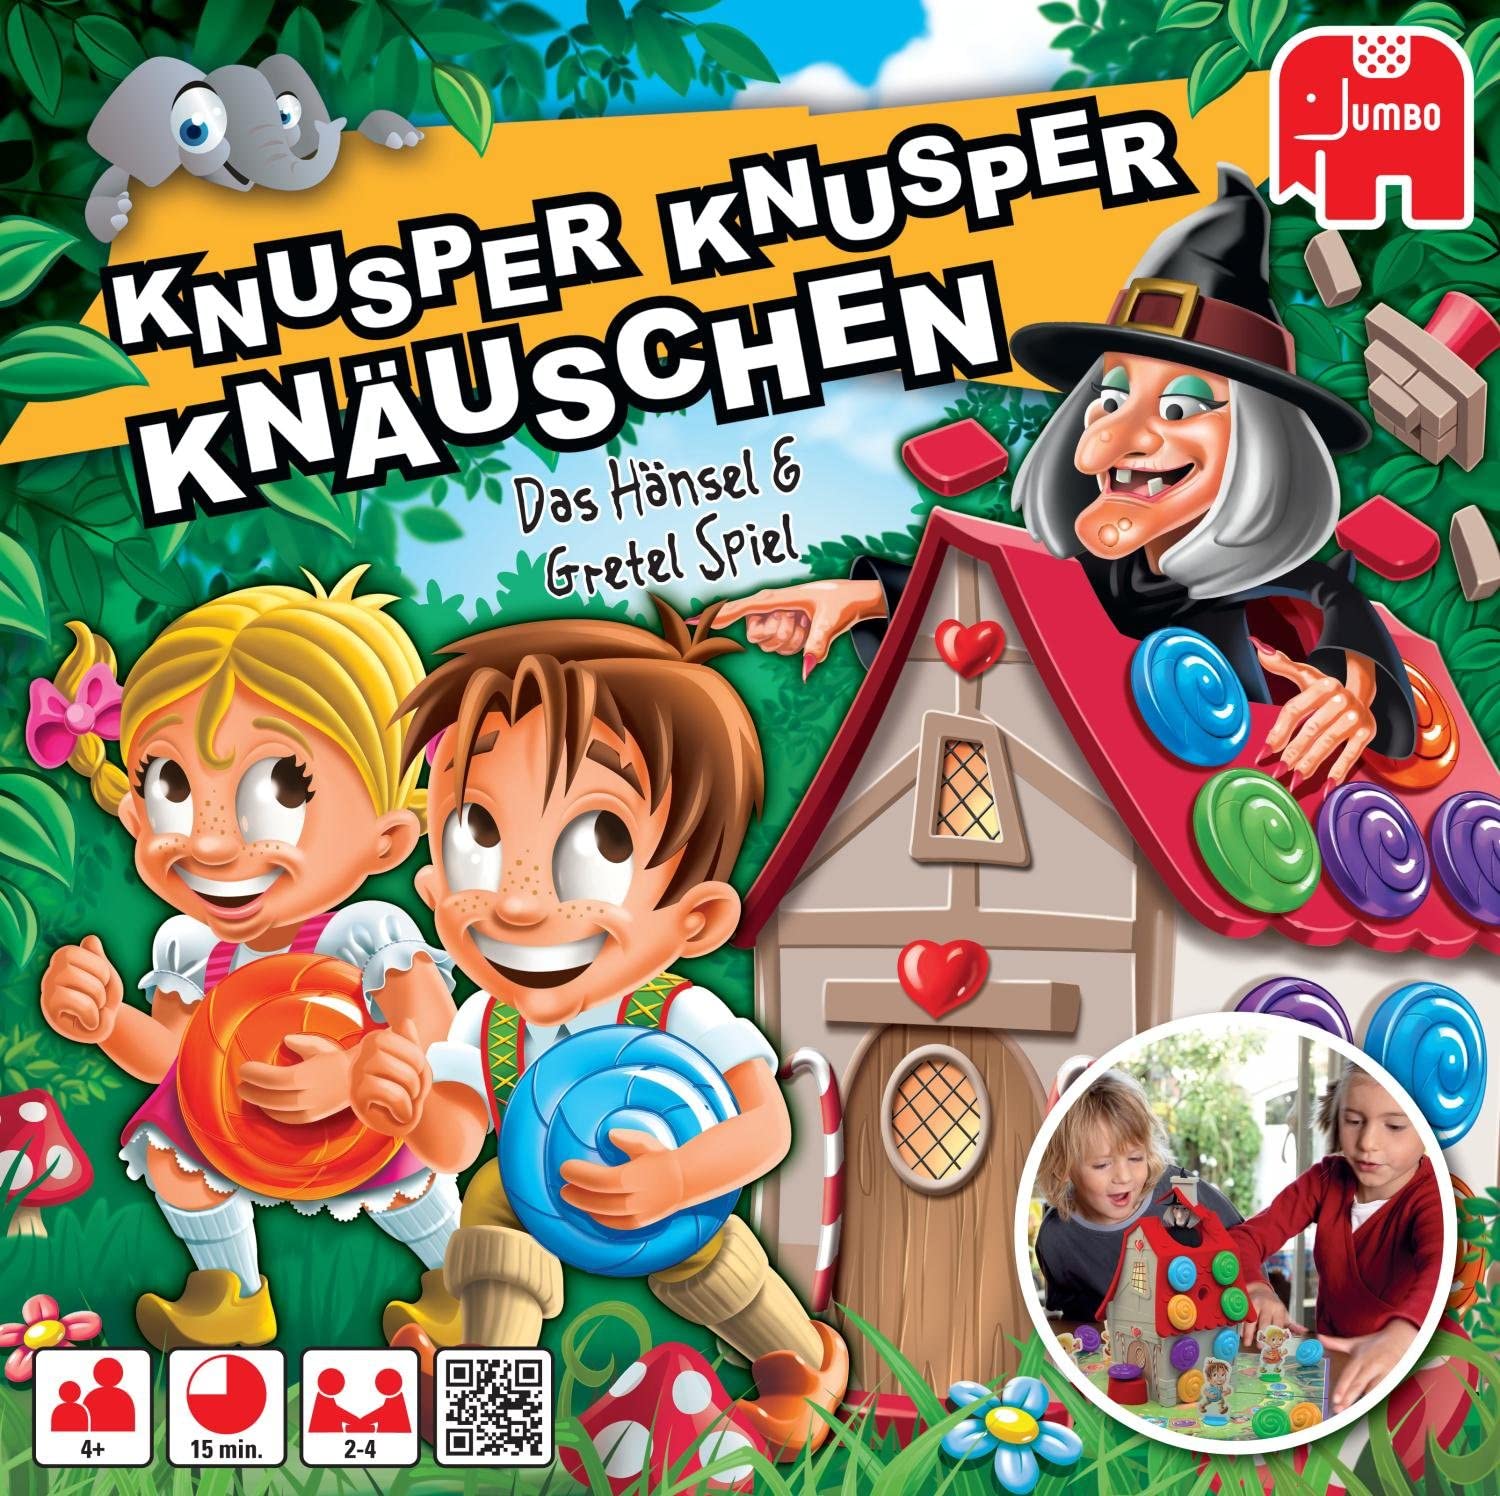 Knusper Knusper Knäuschen Spielanleitung – PDF Download 0 (0)